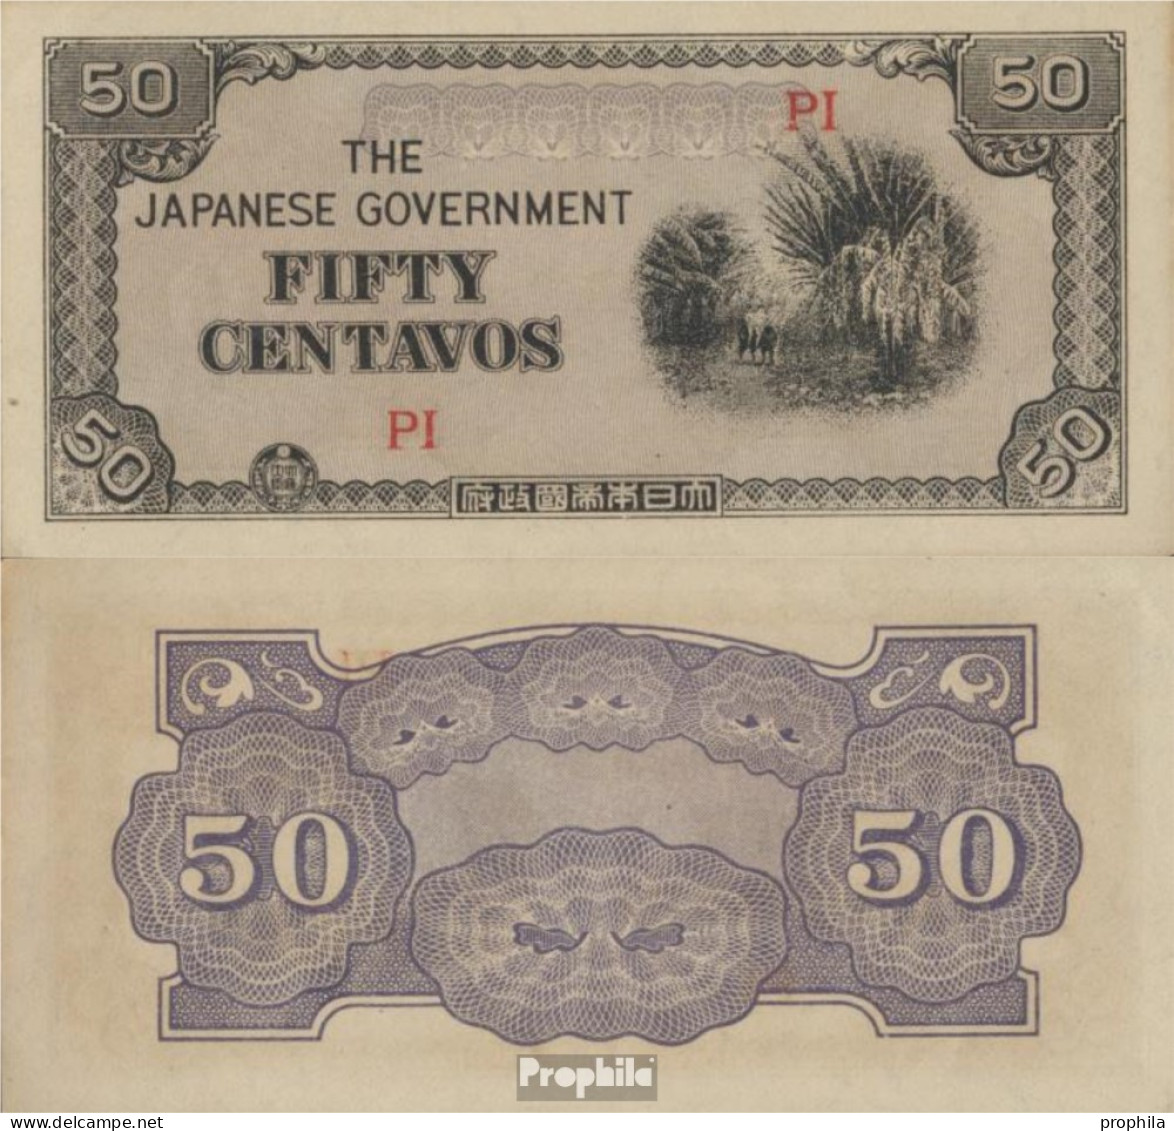 Philippinen Pick-Nr: 105b Bankfrisch 1942 50 Centavos - Philippines